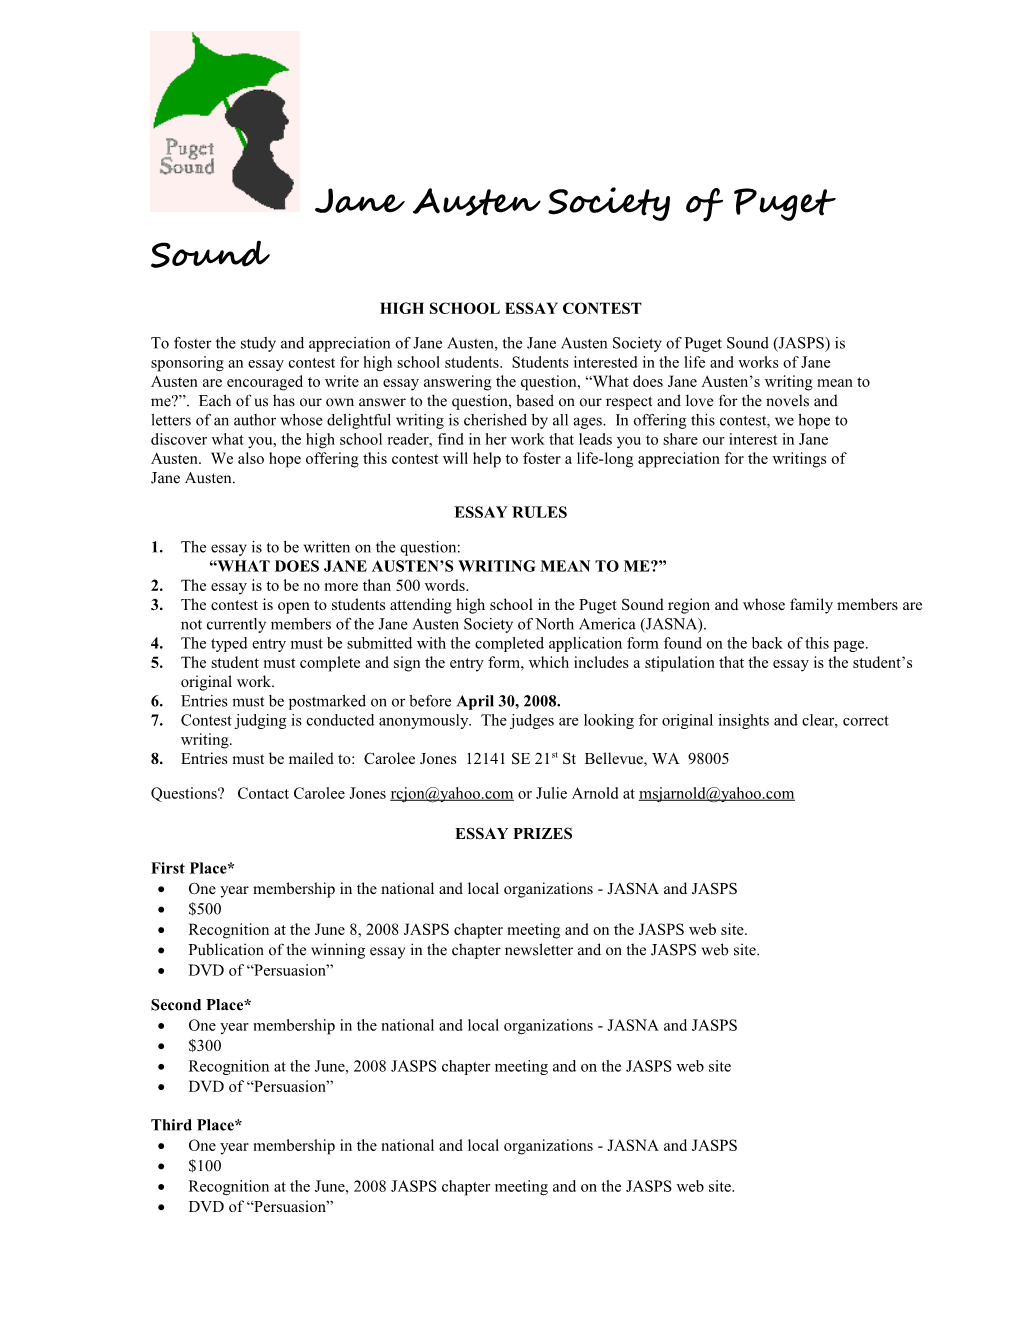 Jane Austen Society of Puget Sound